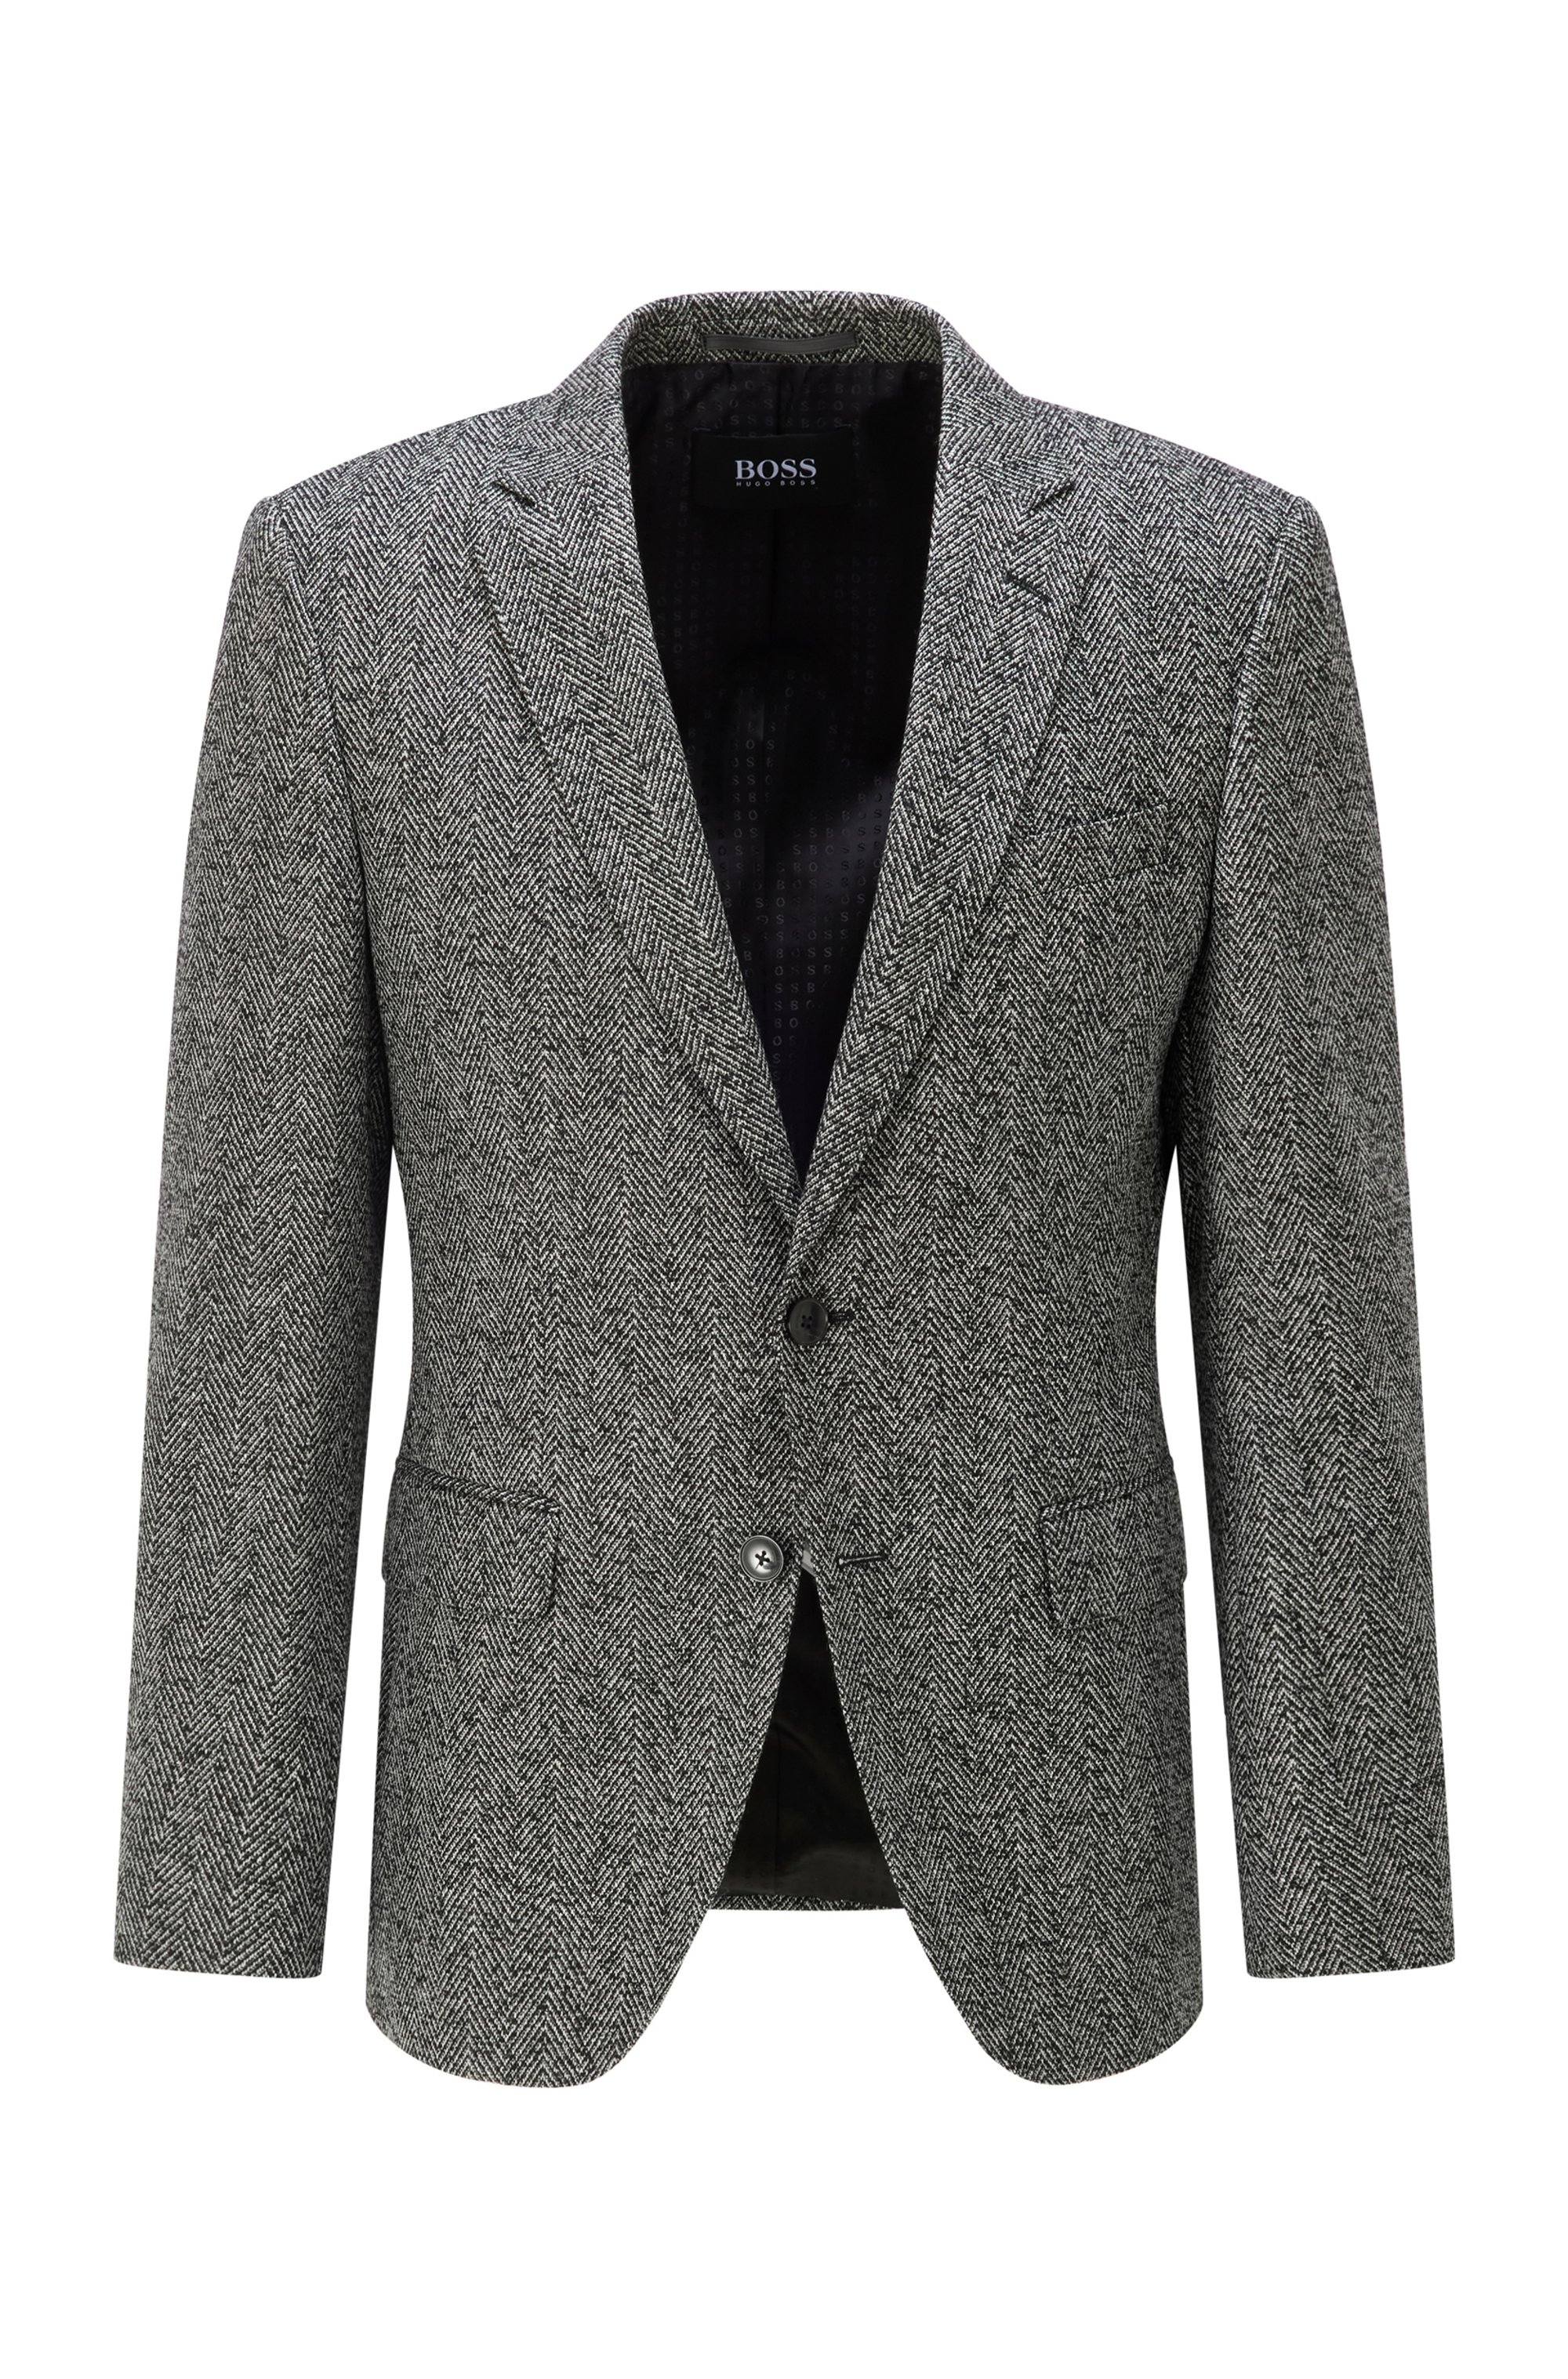 Slim-fit jacket in a herringbone wool blend, Black